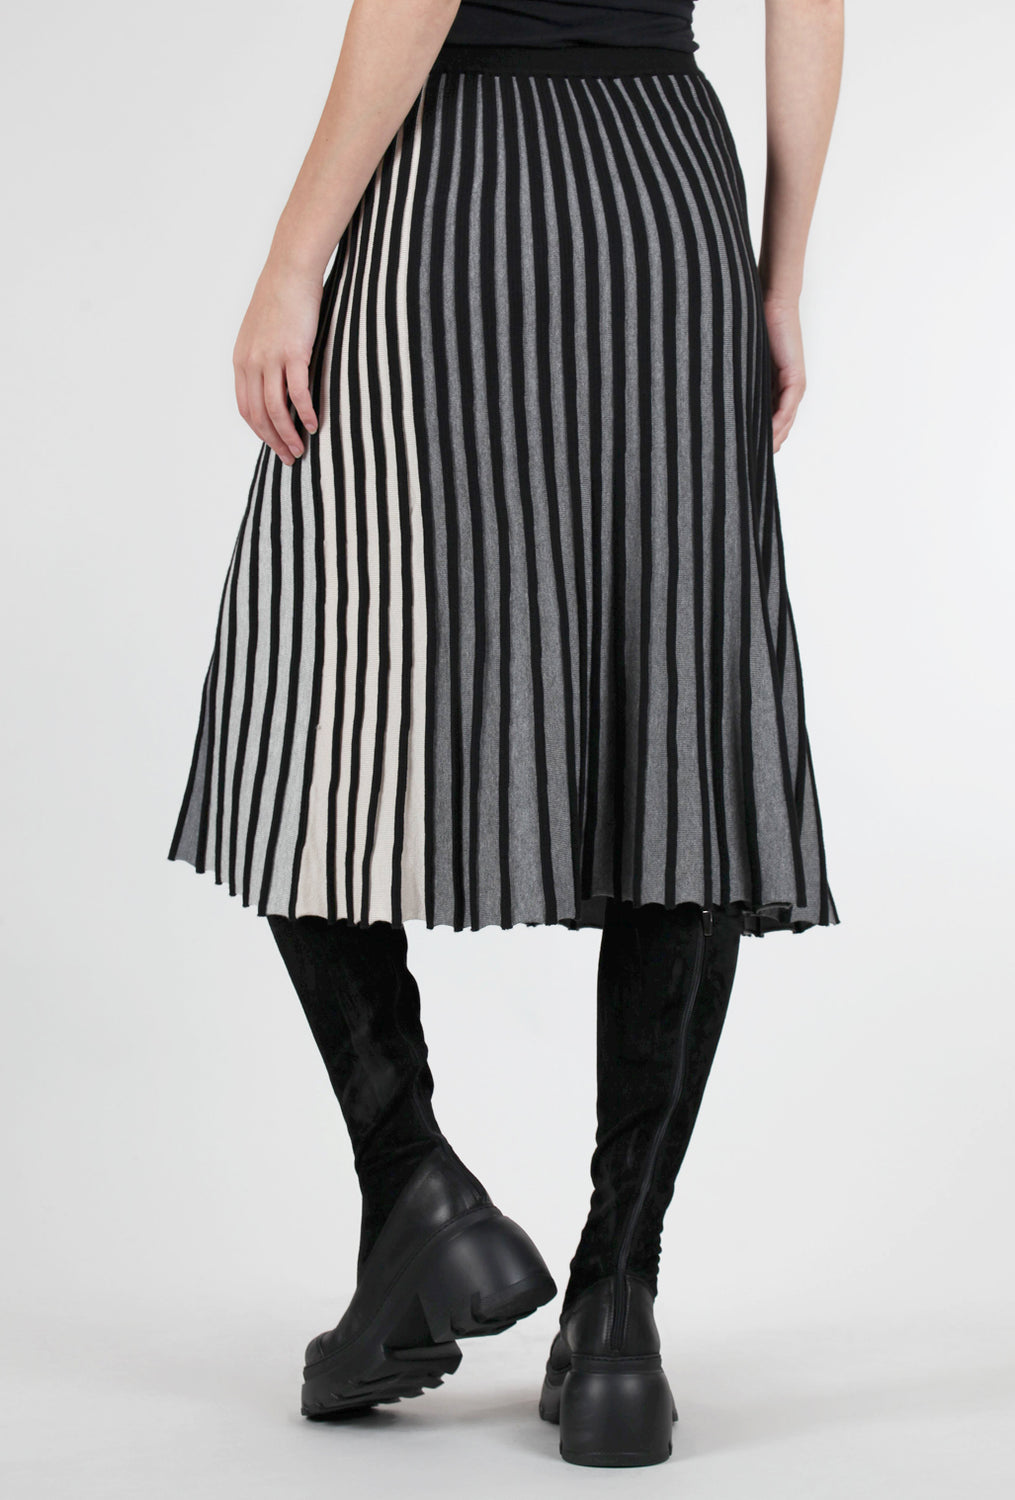 Kerisma Encore Skirt, Gray Multi 